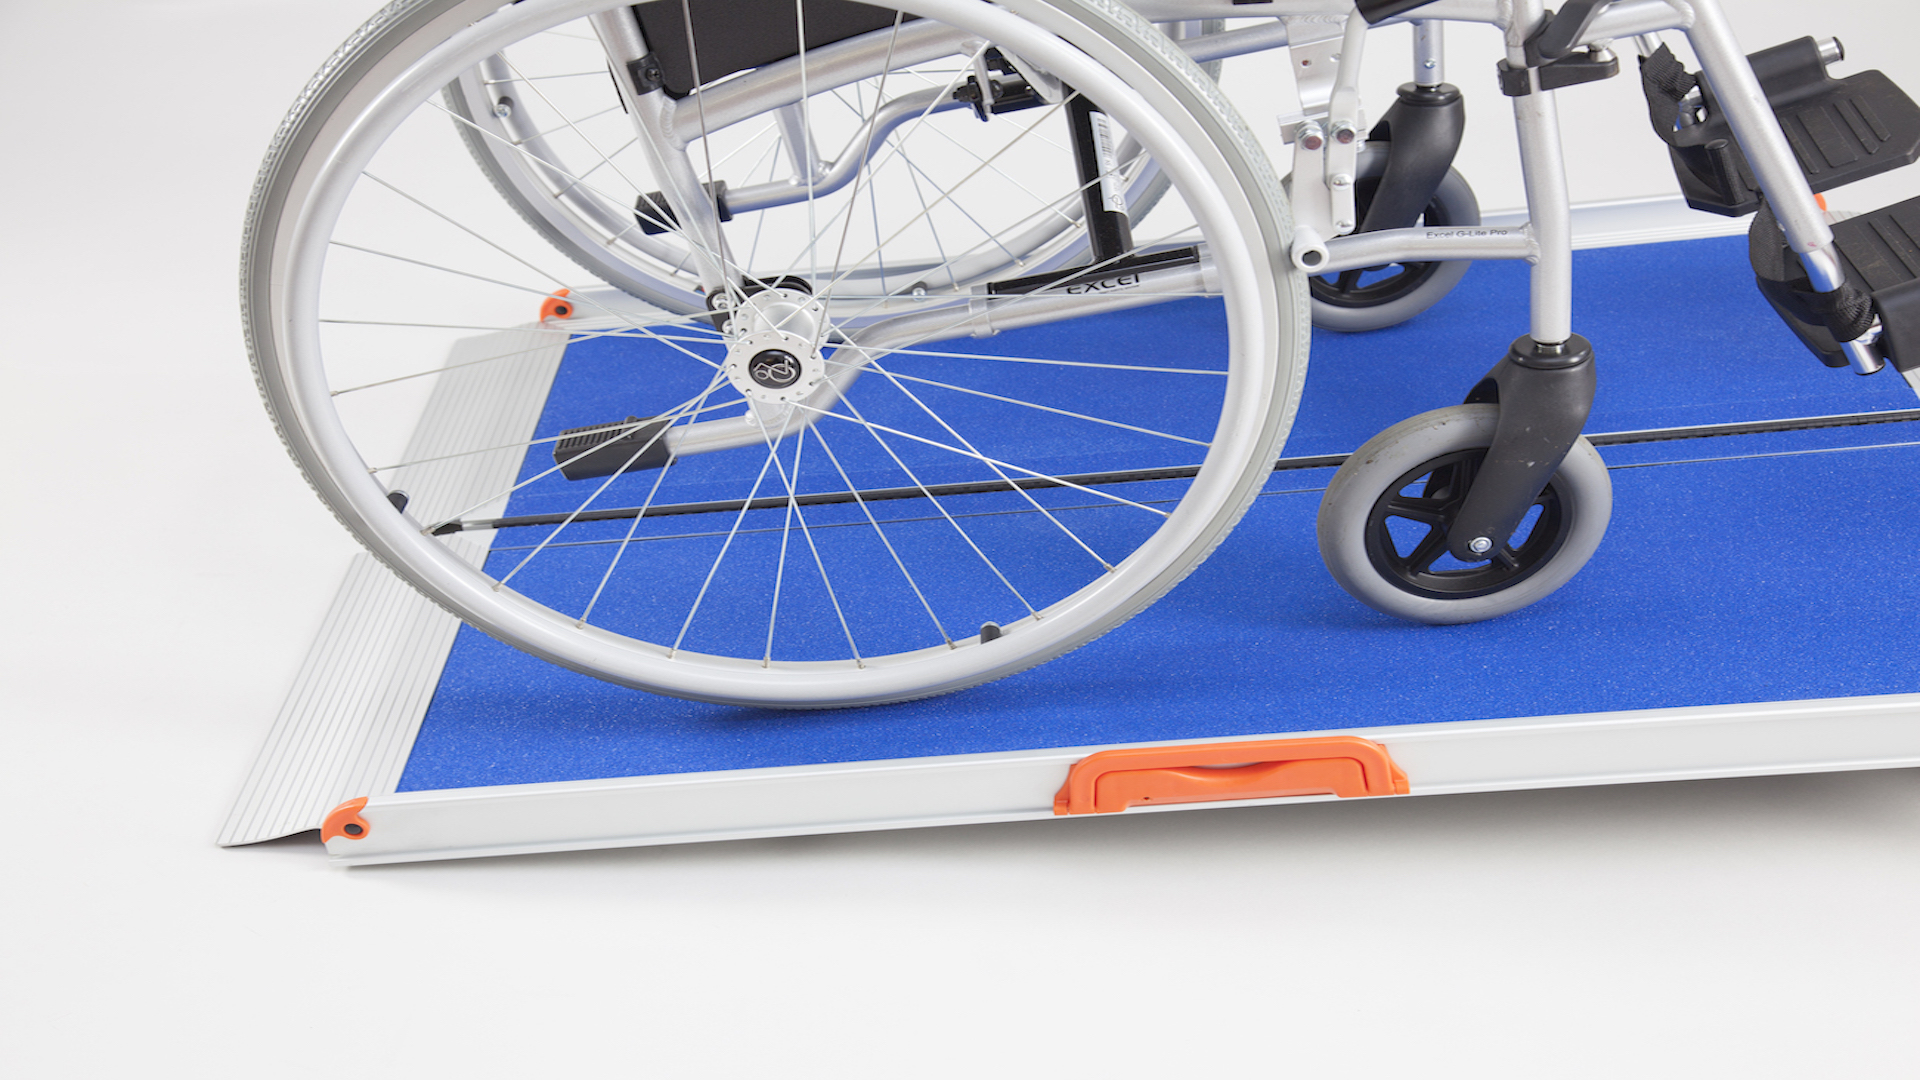 Faltbare Rollstuhlrampe mit blauer Oberfläche und Rollstuhl